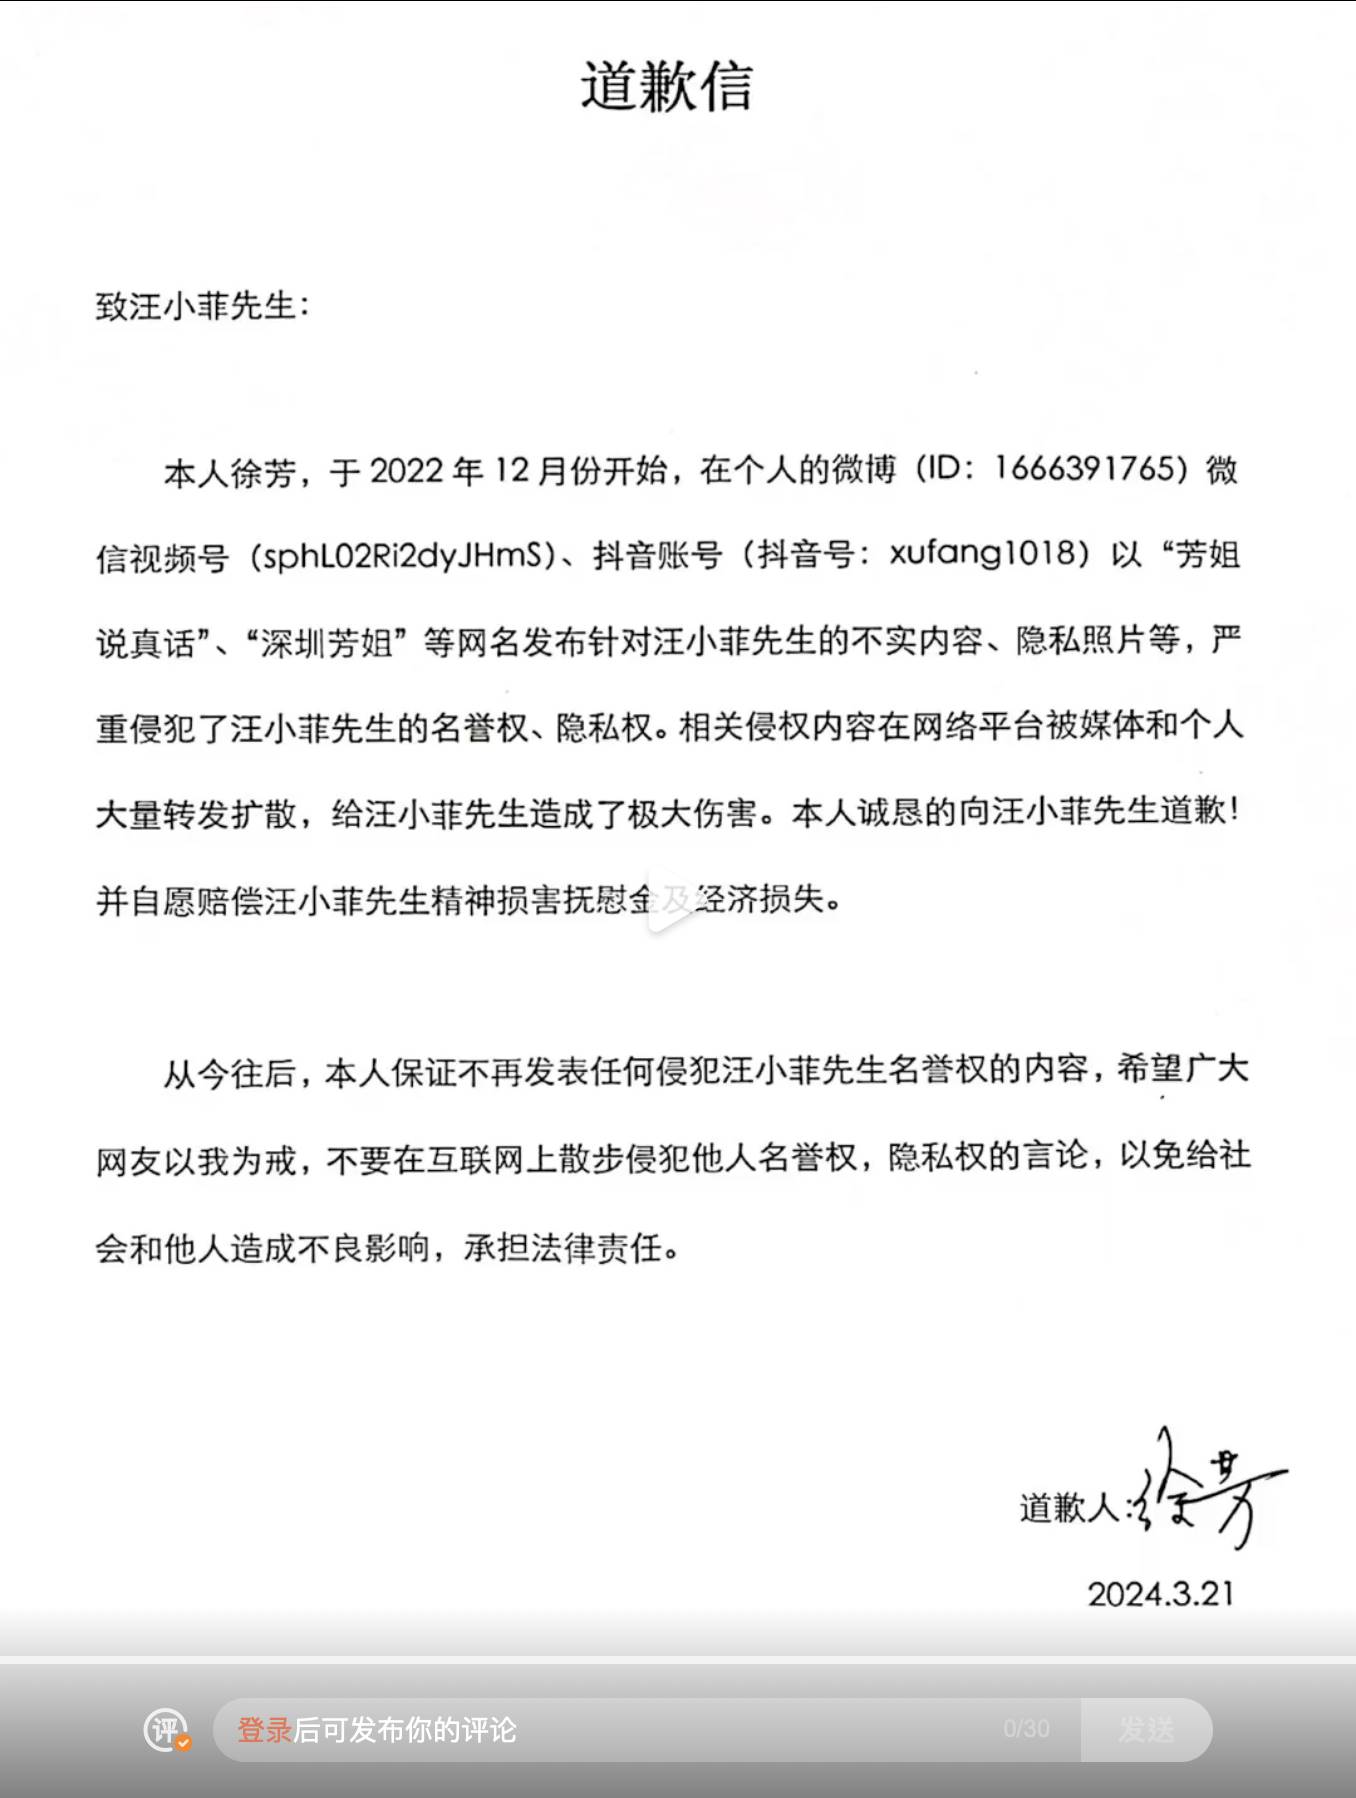 張蘭昨（25）日在個人微博曬出中國博主徐芳道歉信。